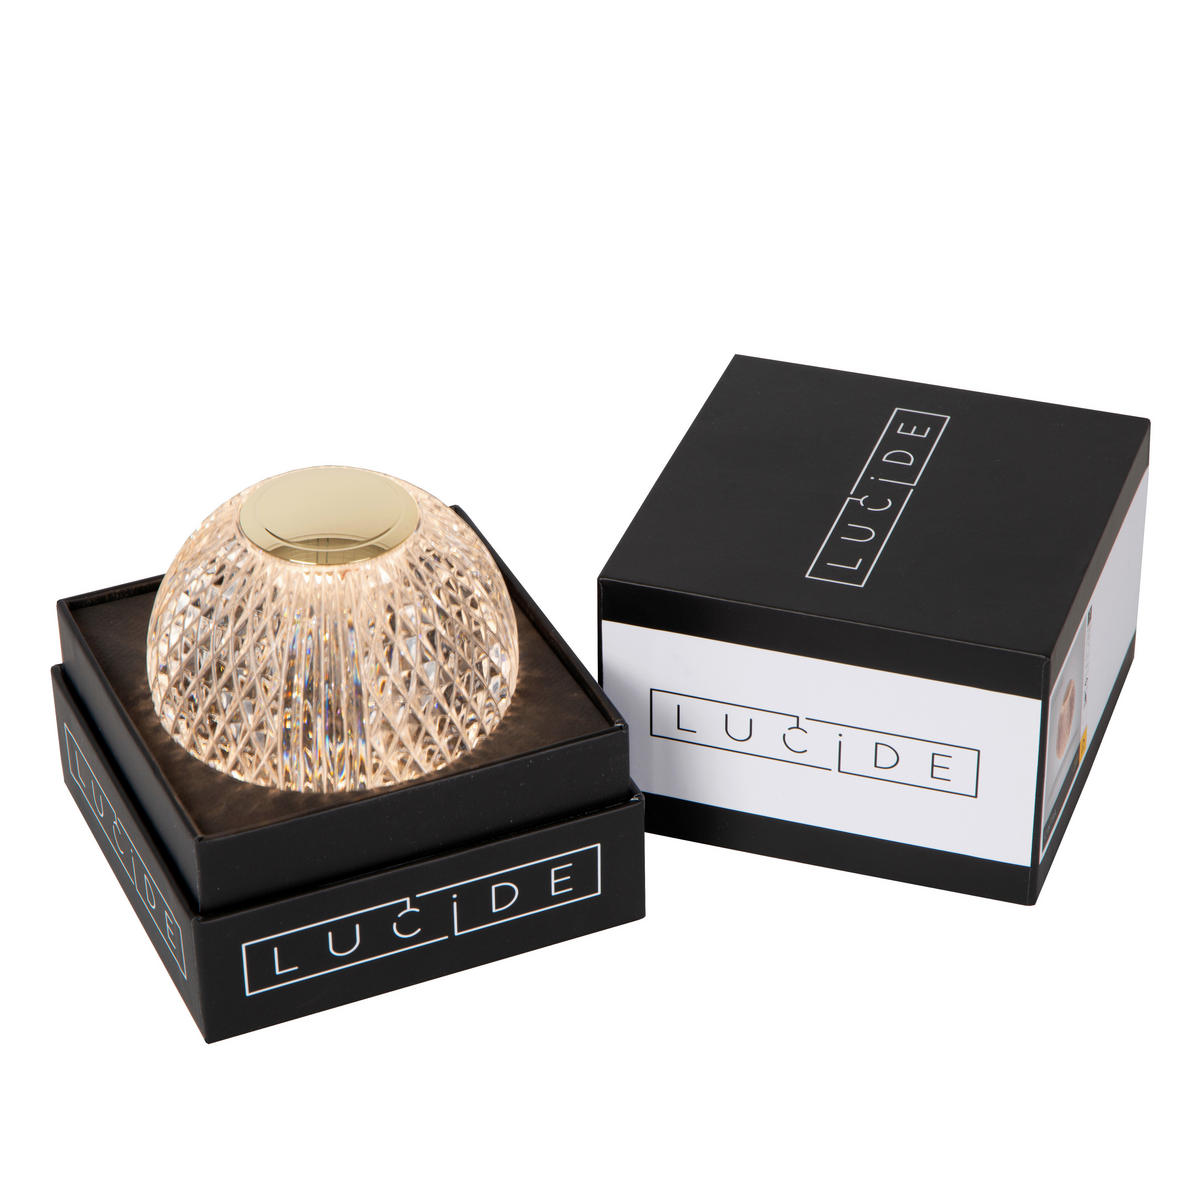 LED-TISCHLEUCHTE Cintra 9/9/8.7 cm   - Transparent, Design, Kunststoff (9/9/8.7cm) - Lucide